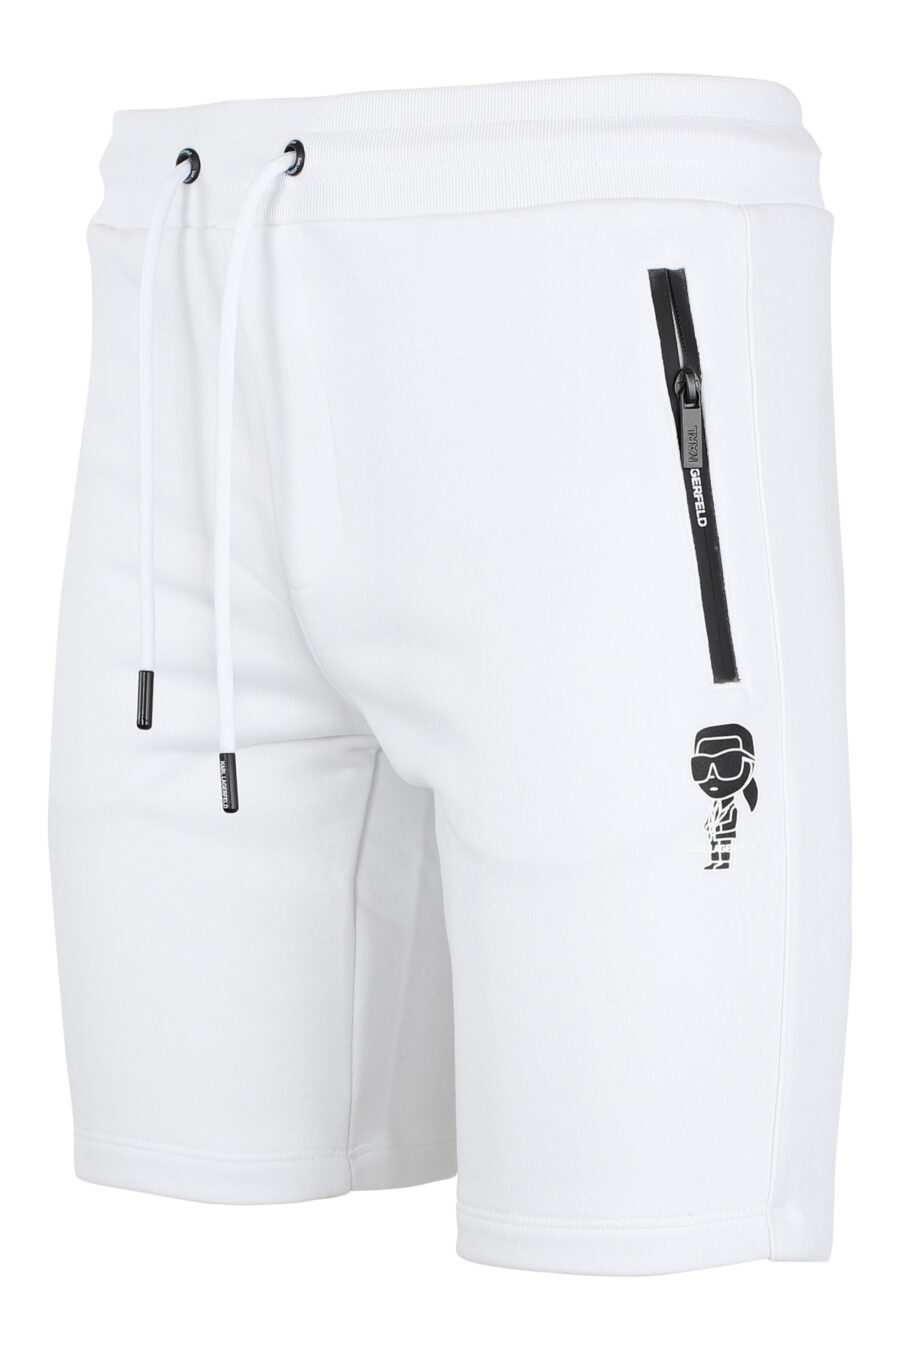 Calças de fato de treino curtas brancas com minilogo "karl" em silhueta preta - IMG 9515